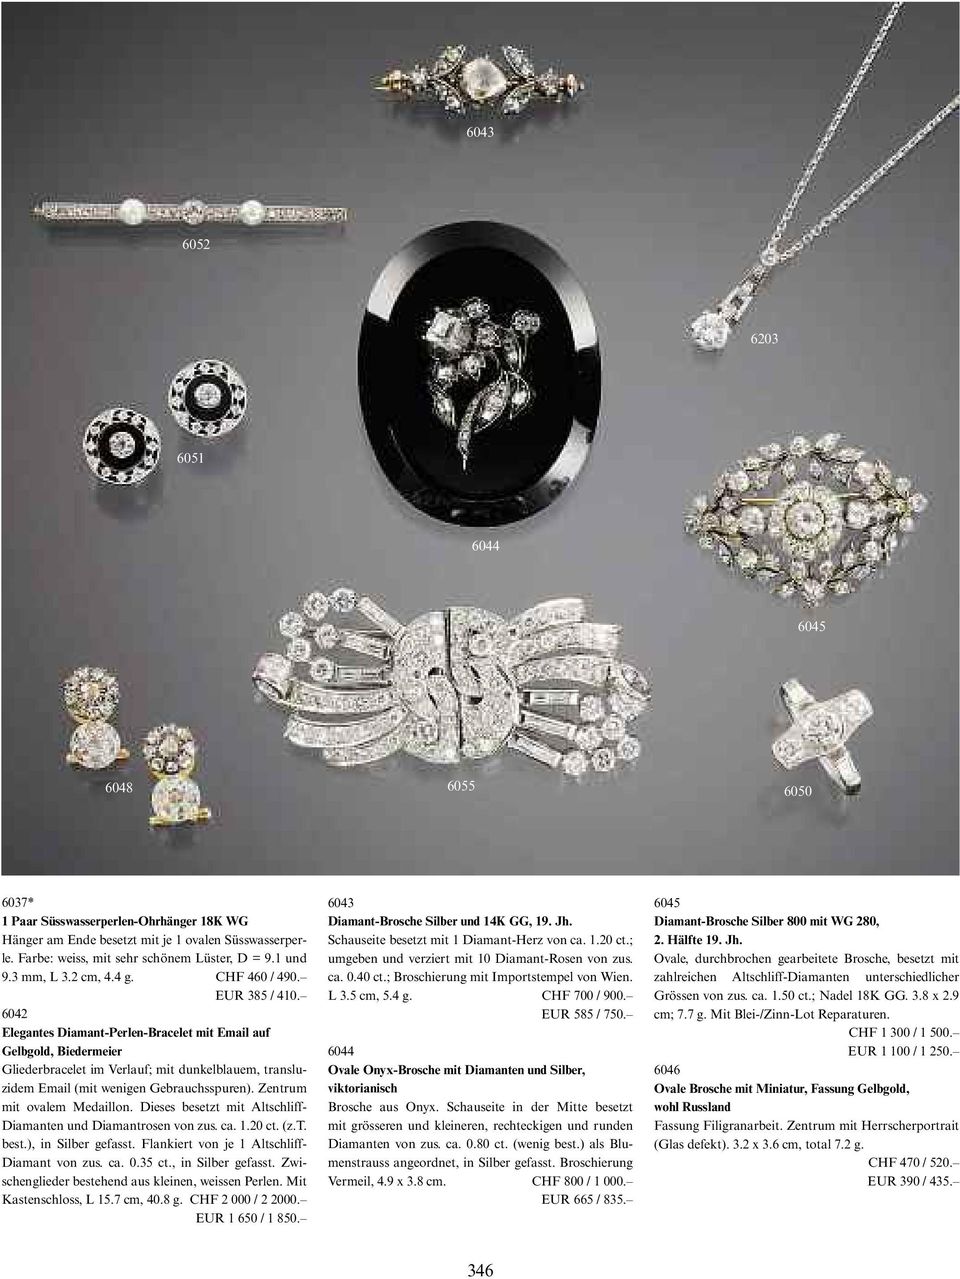 6042 Elegantes Diamant-Perlen-Bracelet mit Email auf Gelbgold, Biedermeier Gliederbracelet im Verlauf; mit dunkelblauem, transluzidem Email (mit wenigen Gebrauchsspuren). Zentrum mit ovalem medaillon.